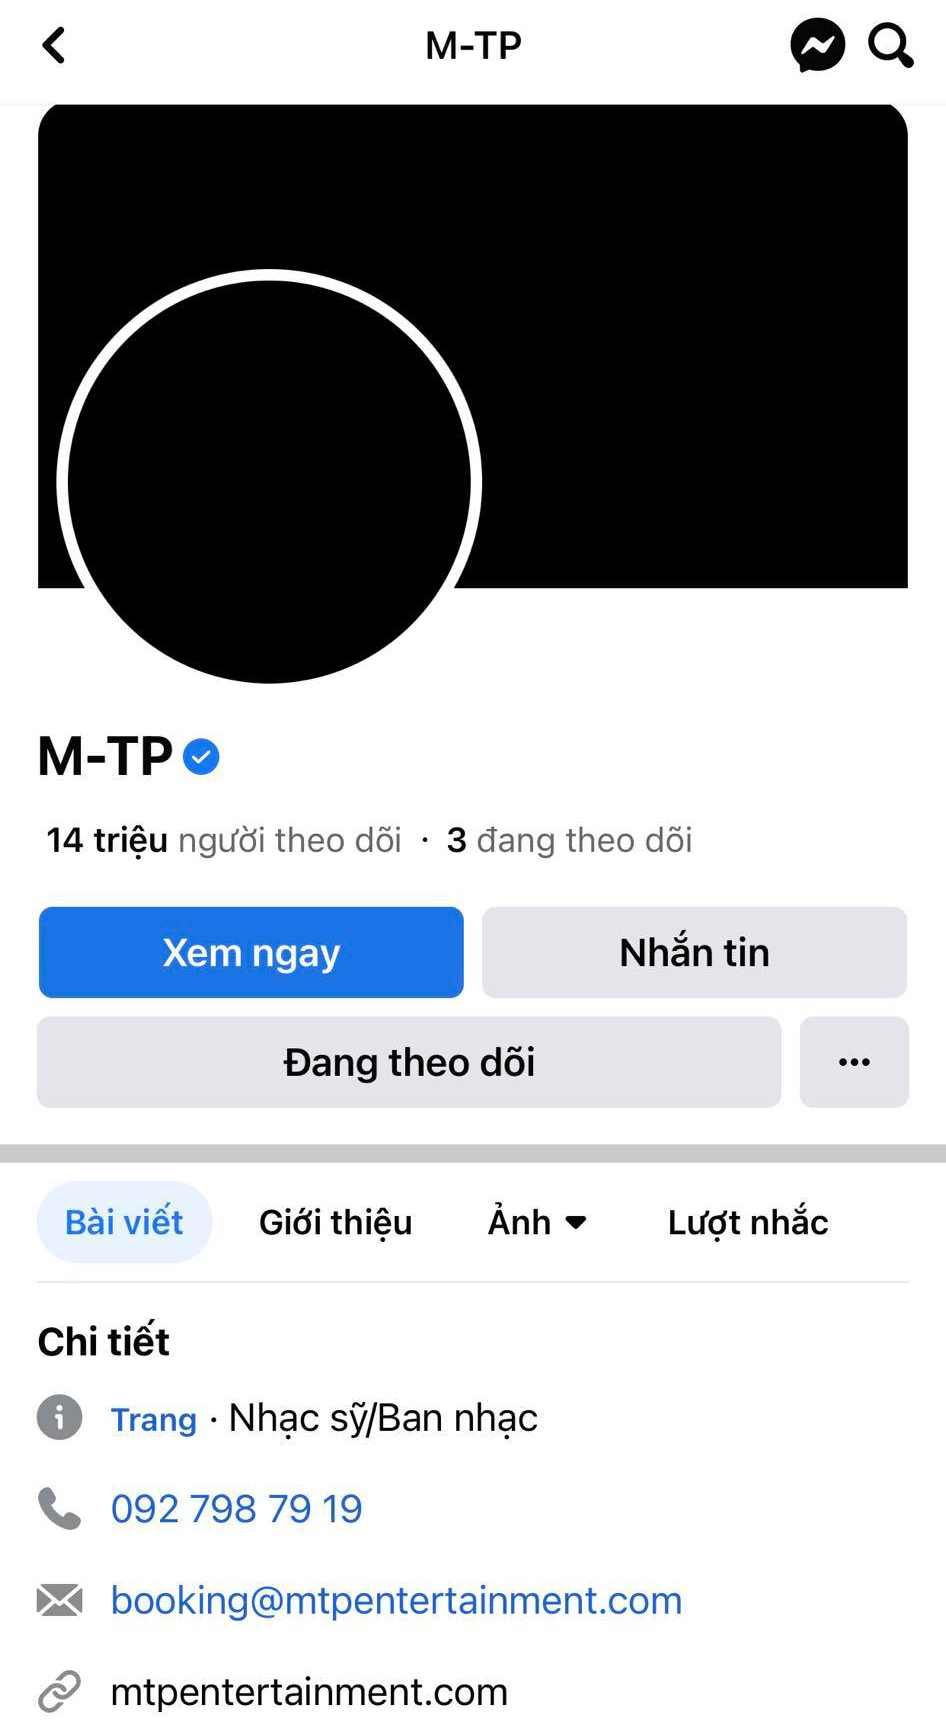 Sơn Tùng M-TP đổi ảnh đại diện Facebook sang màu đen, ca sĩ Dương Triệu Vũ vào chia buồn cùng gia đình - ảnh 2